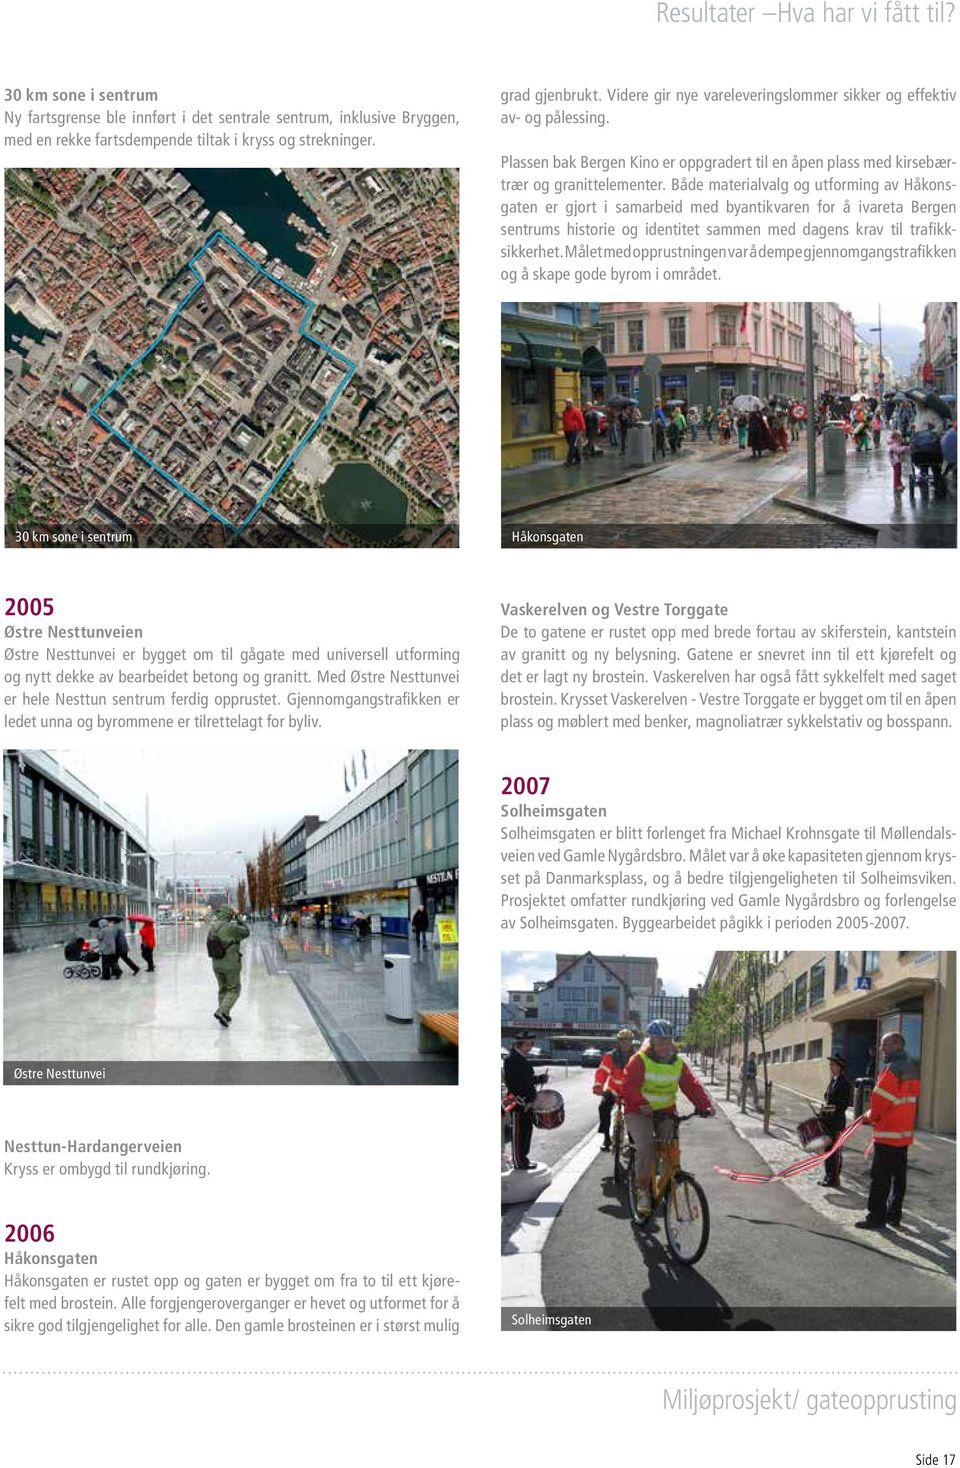 Både materialvalg og utforming av Håkonsgaten er gjort i samarbeid med byantikvaren for å ivareta Bergen sentrums historie og identitet sammen med dagens krav til trafikksikkerhet.